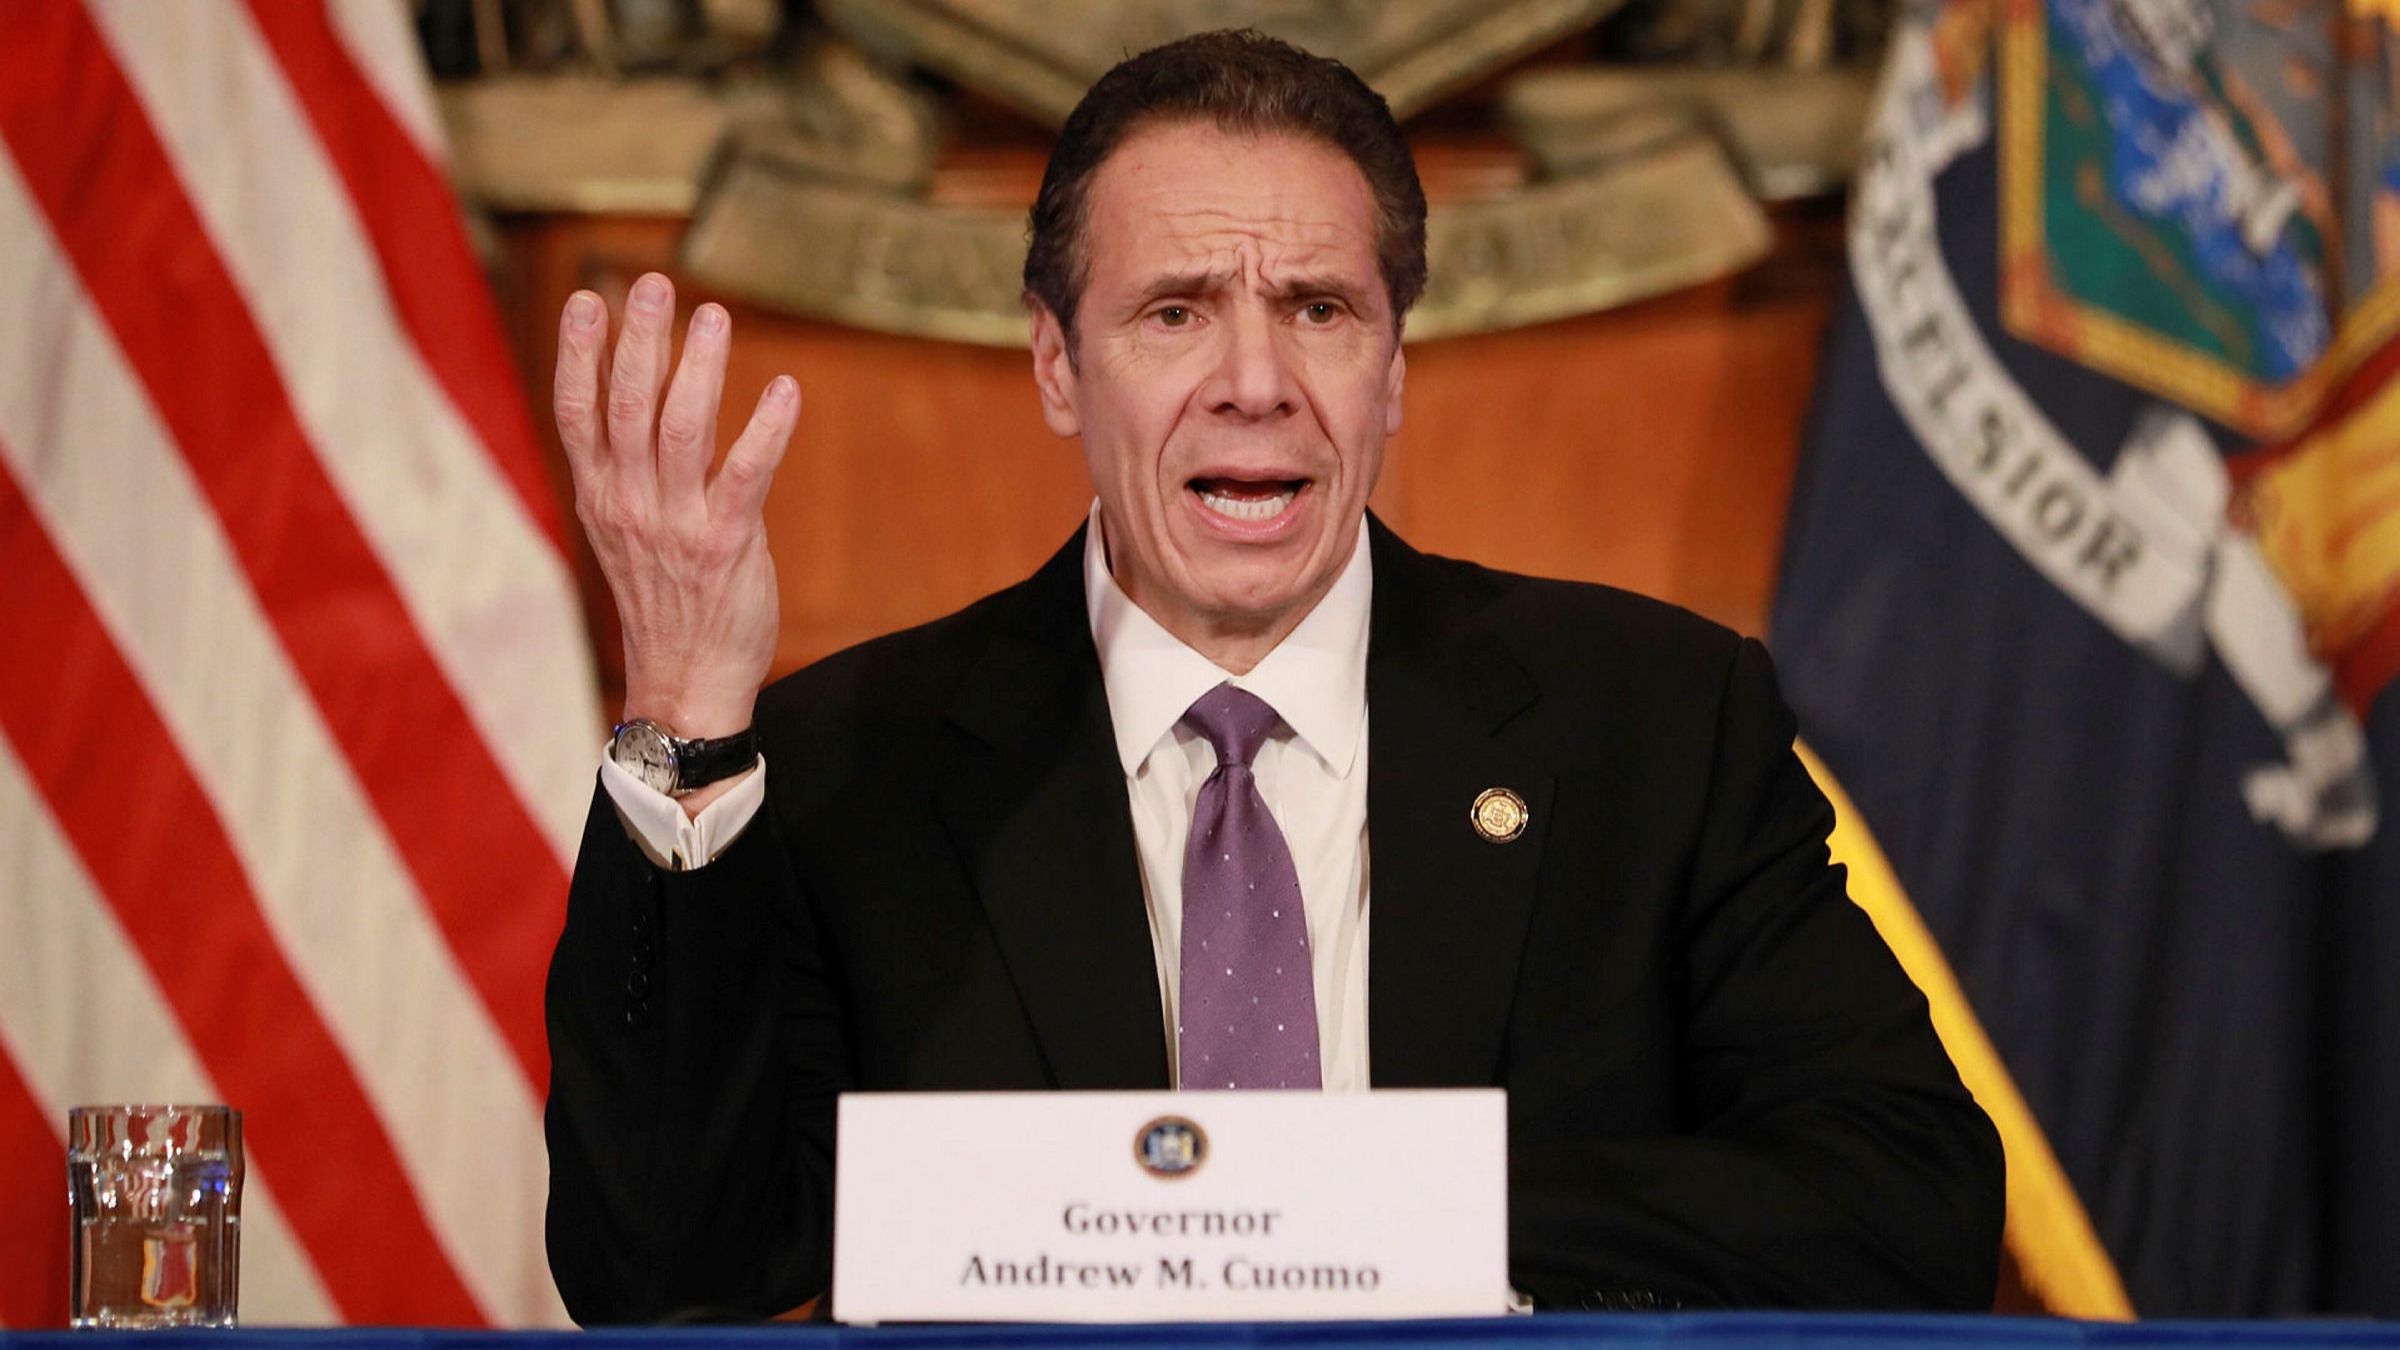 Δύσκολο ξεκίνημα για τον  νέο πρόεδρο: Ο κυβερνήτης της Νέας Υόρκης απειλεί τον Τζόε Μπάιντεν με μήνυση